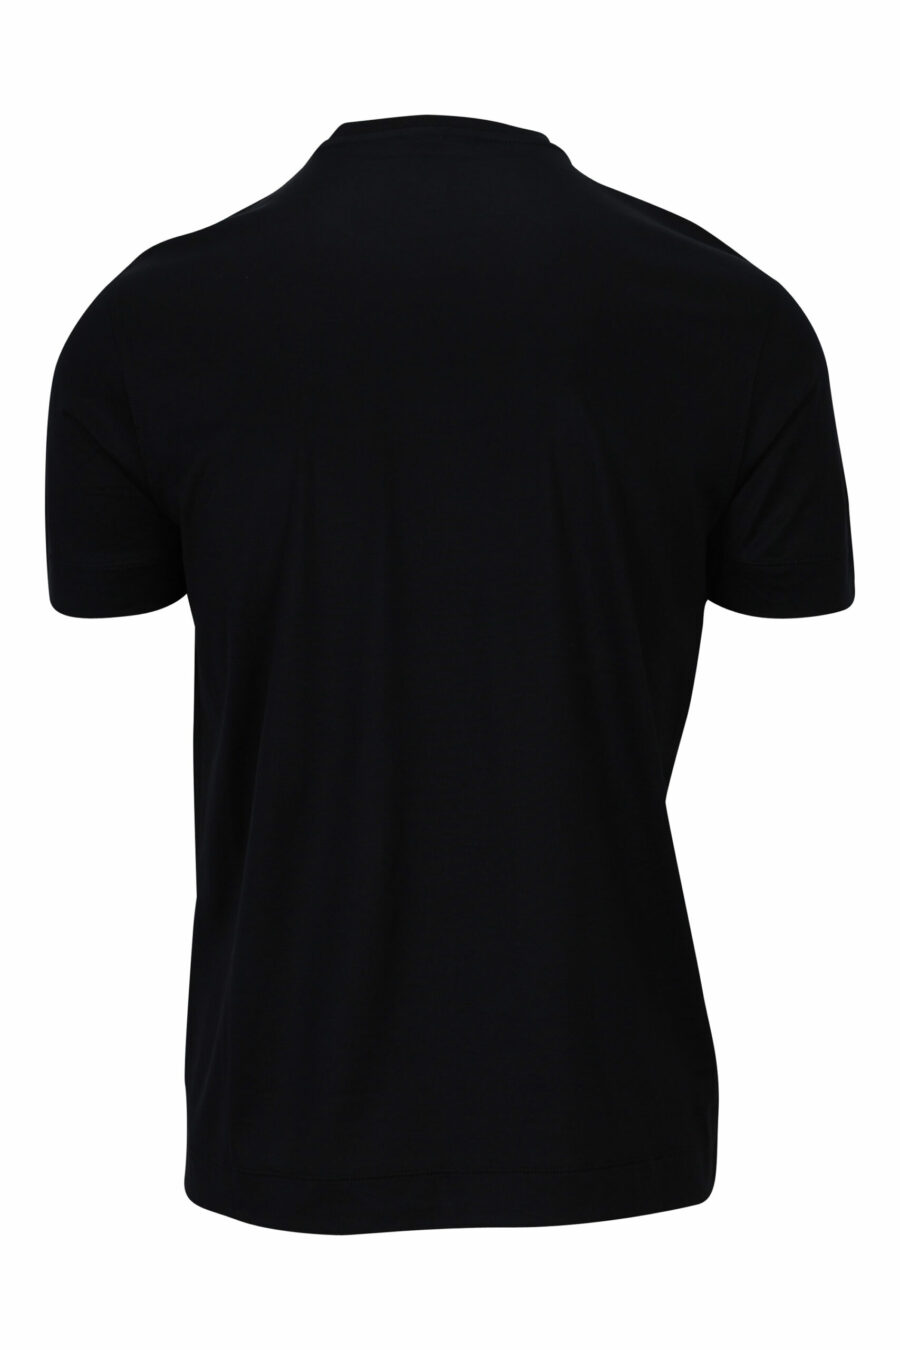 T-shirt preta com maxilogo de águia branca delineado - 8057767554040 1 à escala